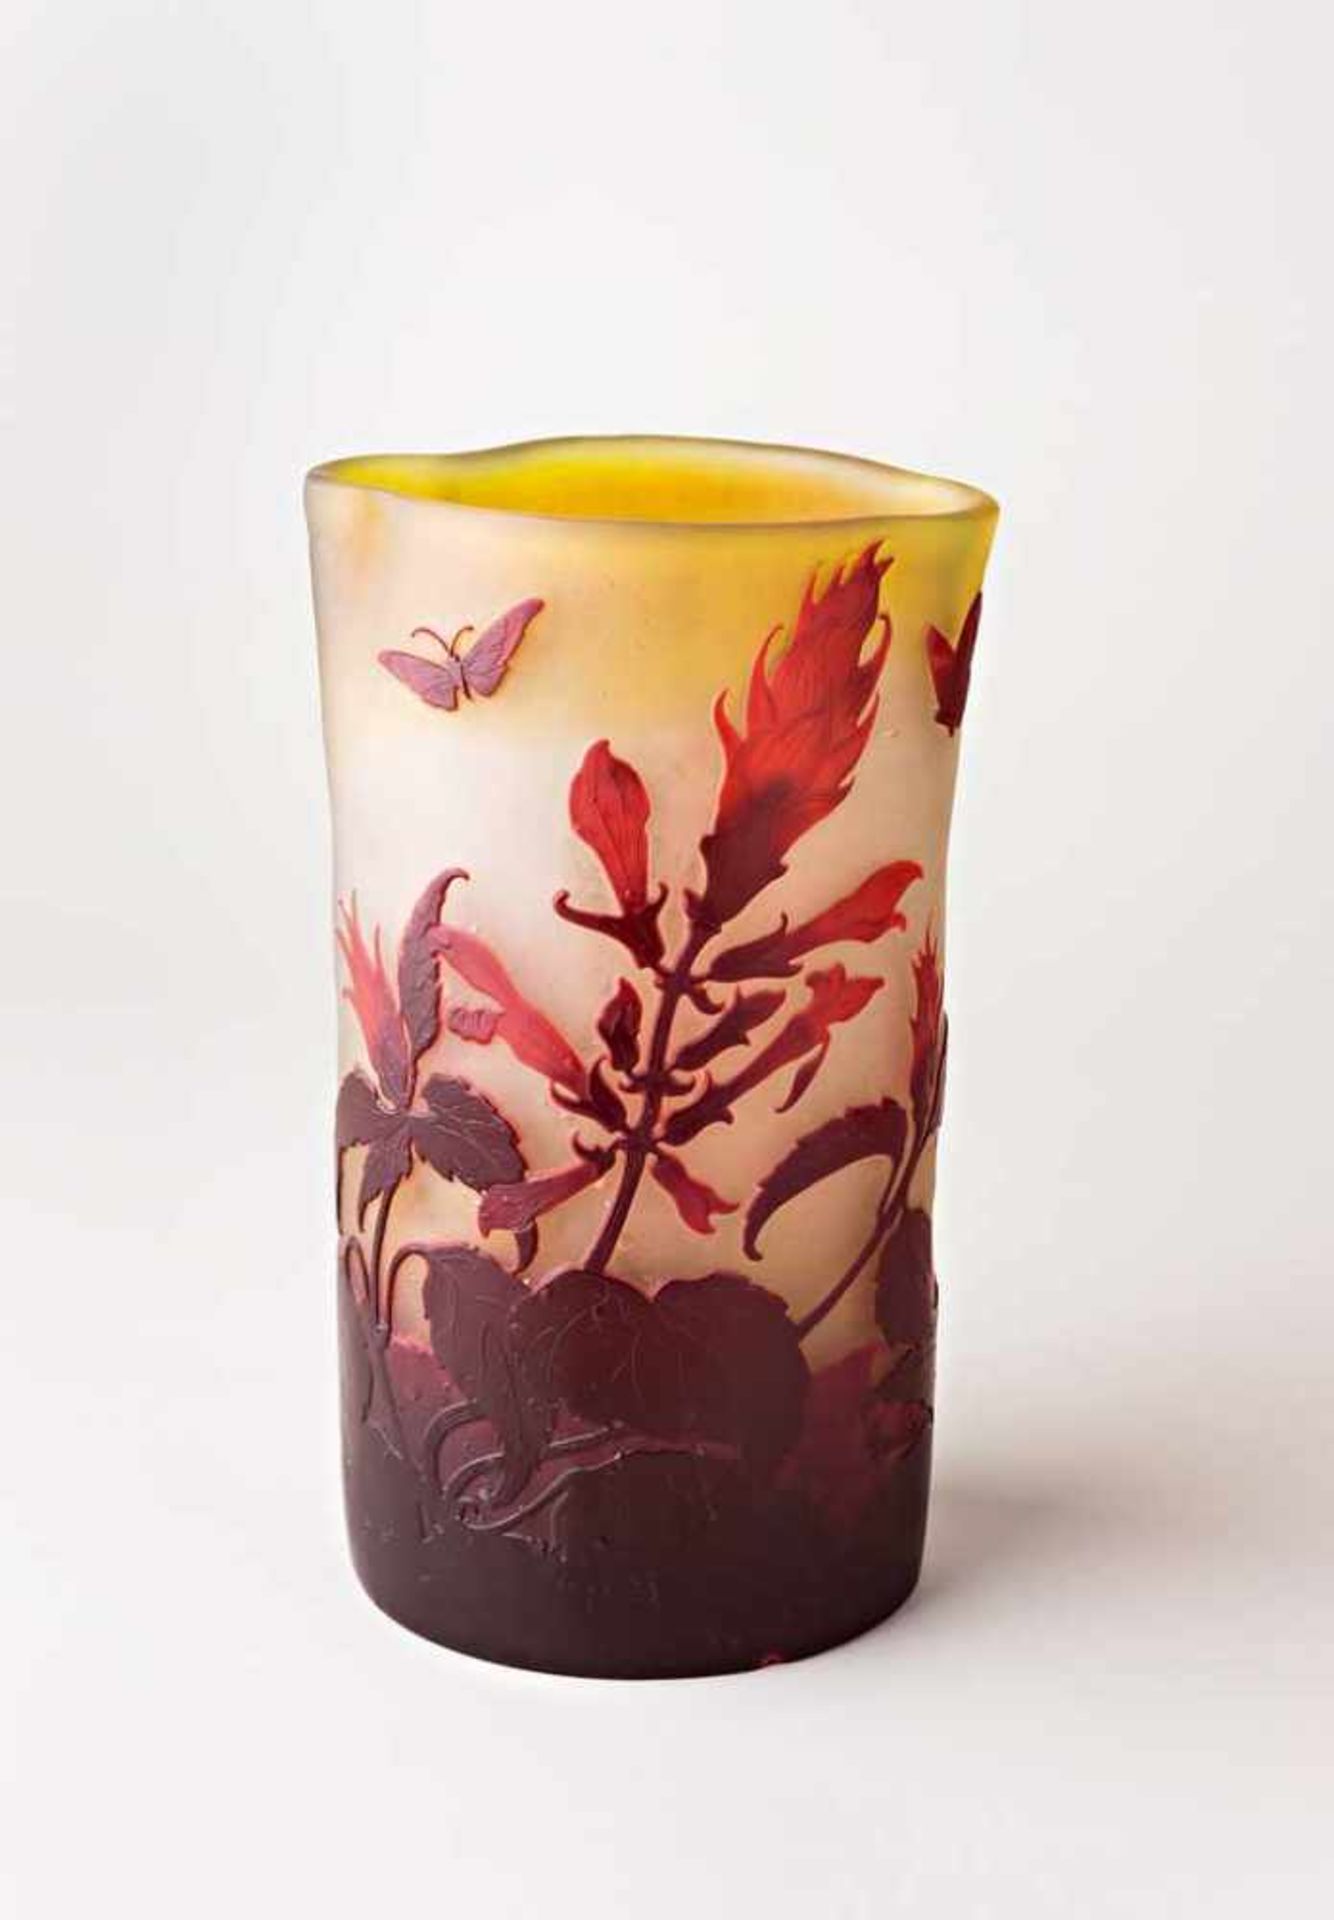 Gallé-Vase. Bez. Ovaler, nach oben vierpassiger Querschnitt. Farbloses Glas mit pulverisierten